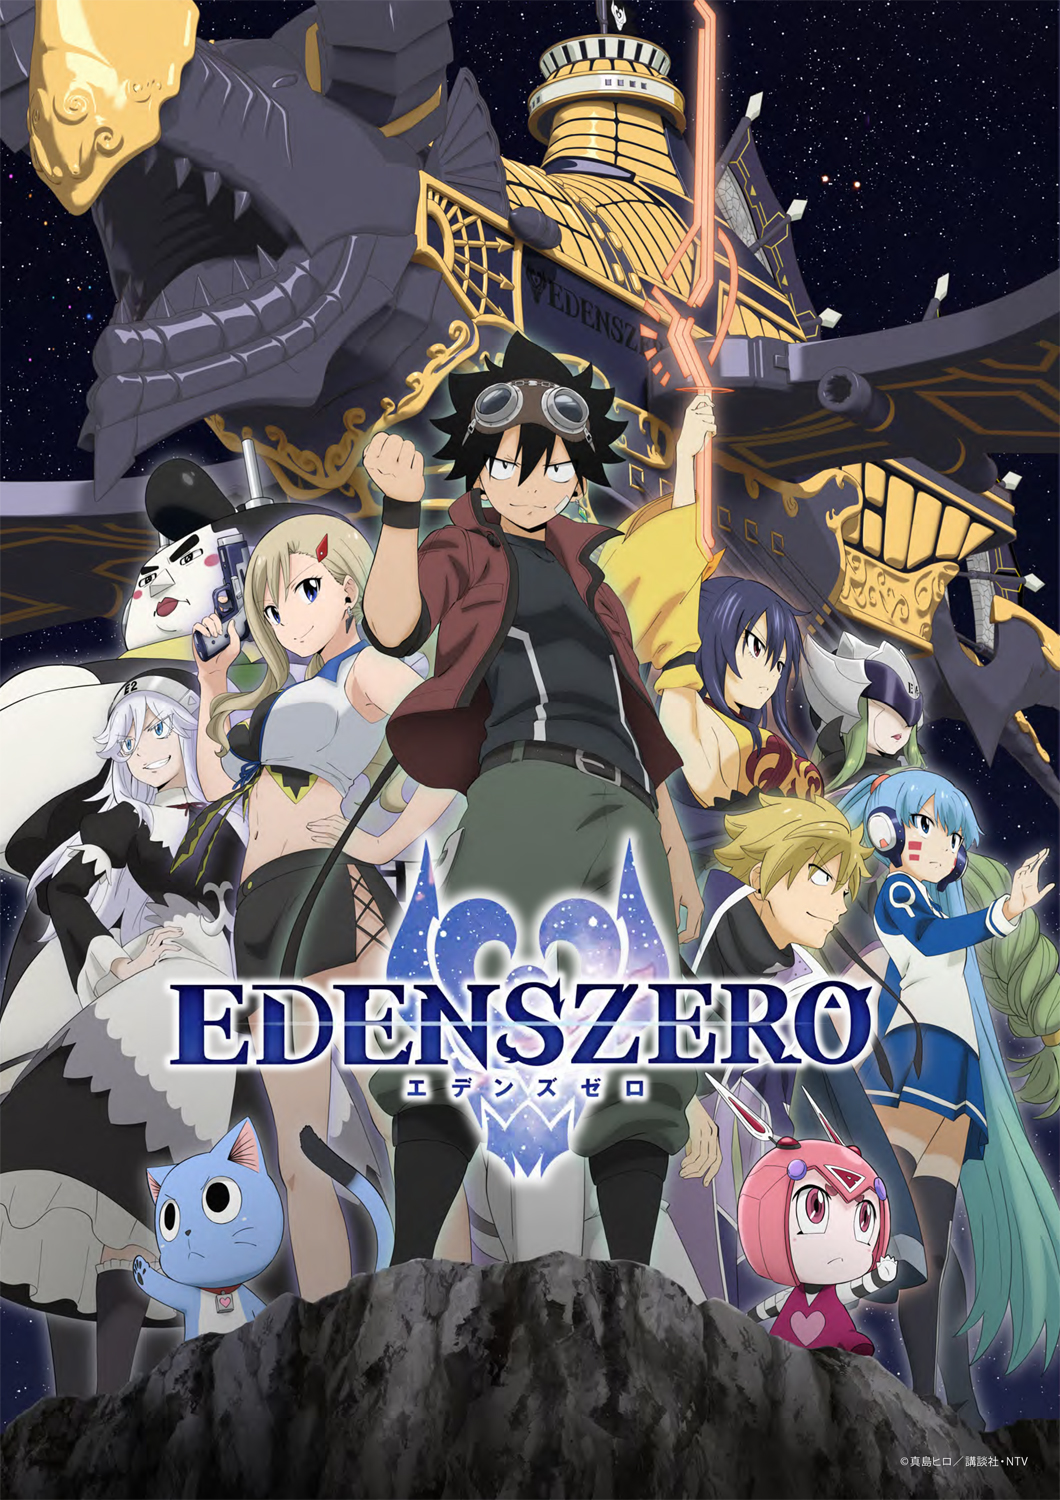 Edens Zero Season 2 - Episode 4 Preview